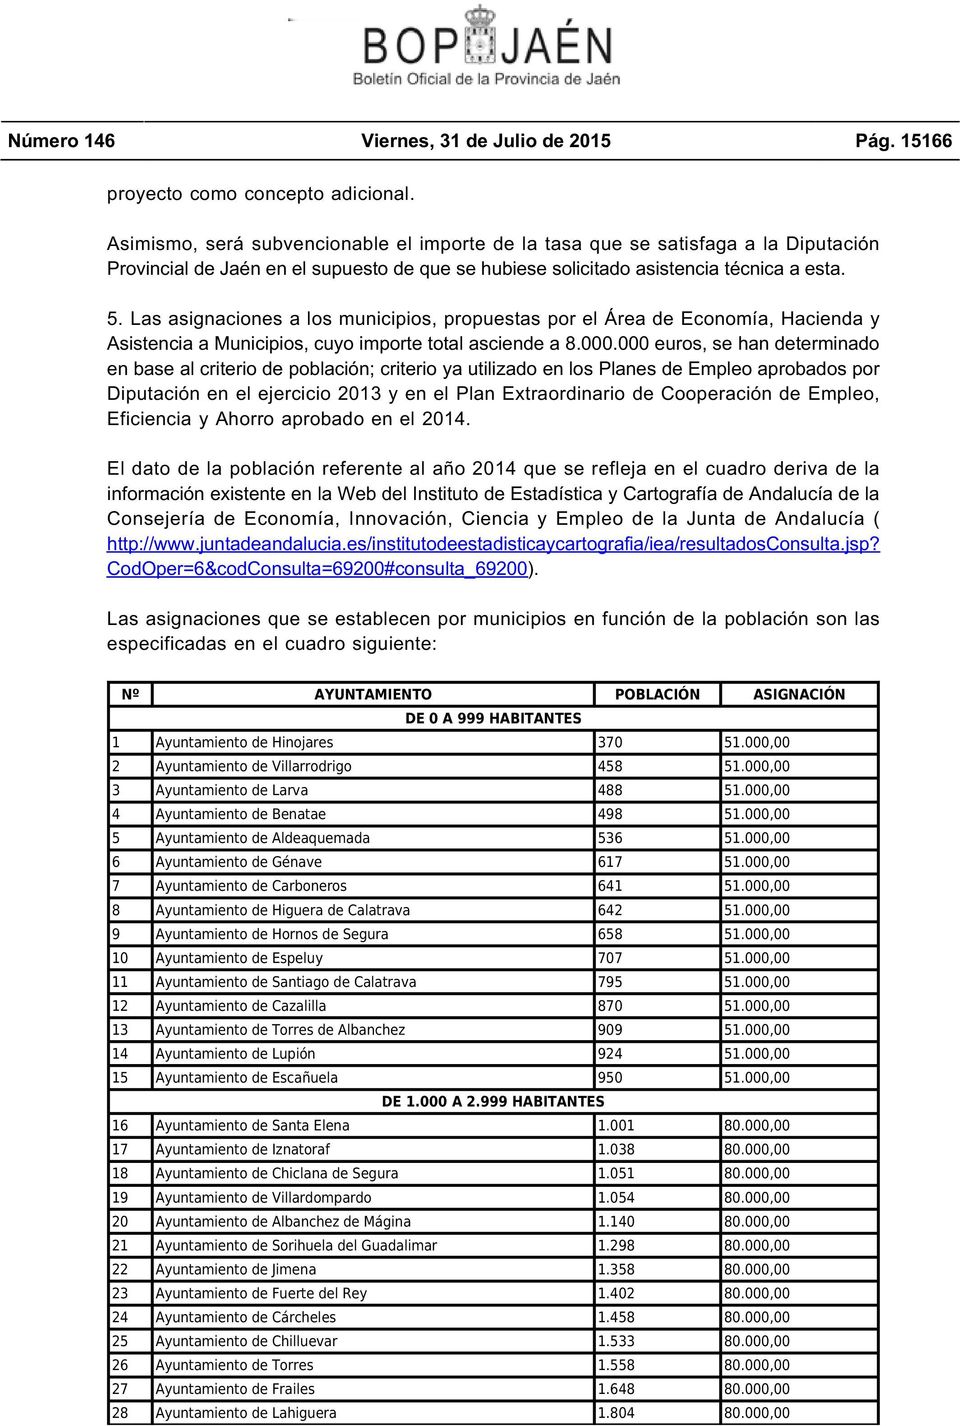 Las asignaciones a los municipios, propuestas por el Área de Economía, Hacienda y Asistencia a Municipios, cuyo importe total asciende a 8.000.